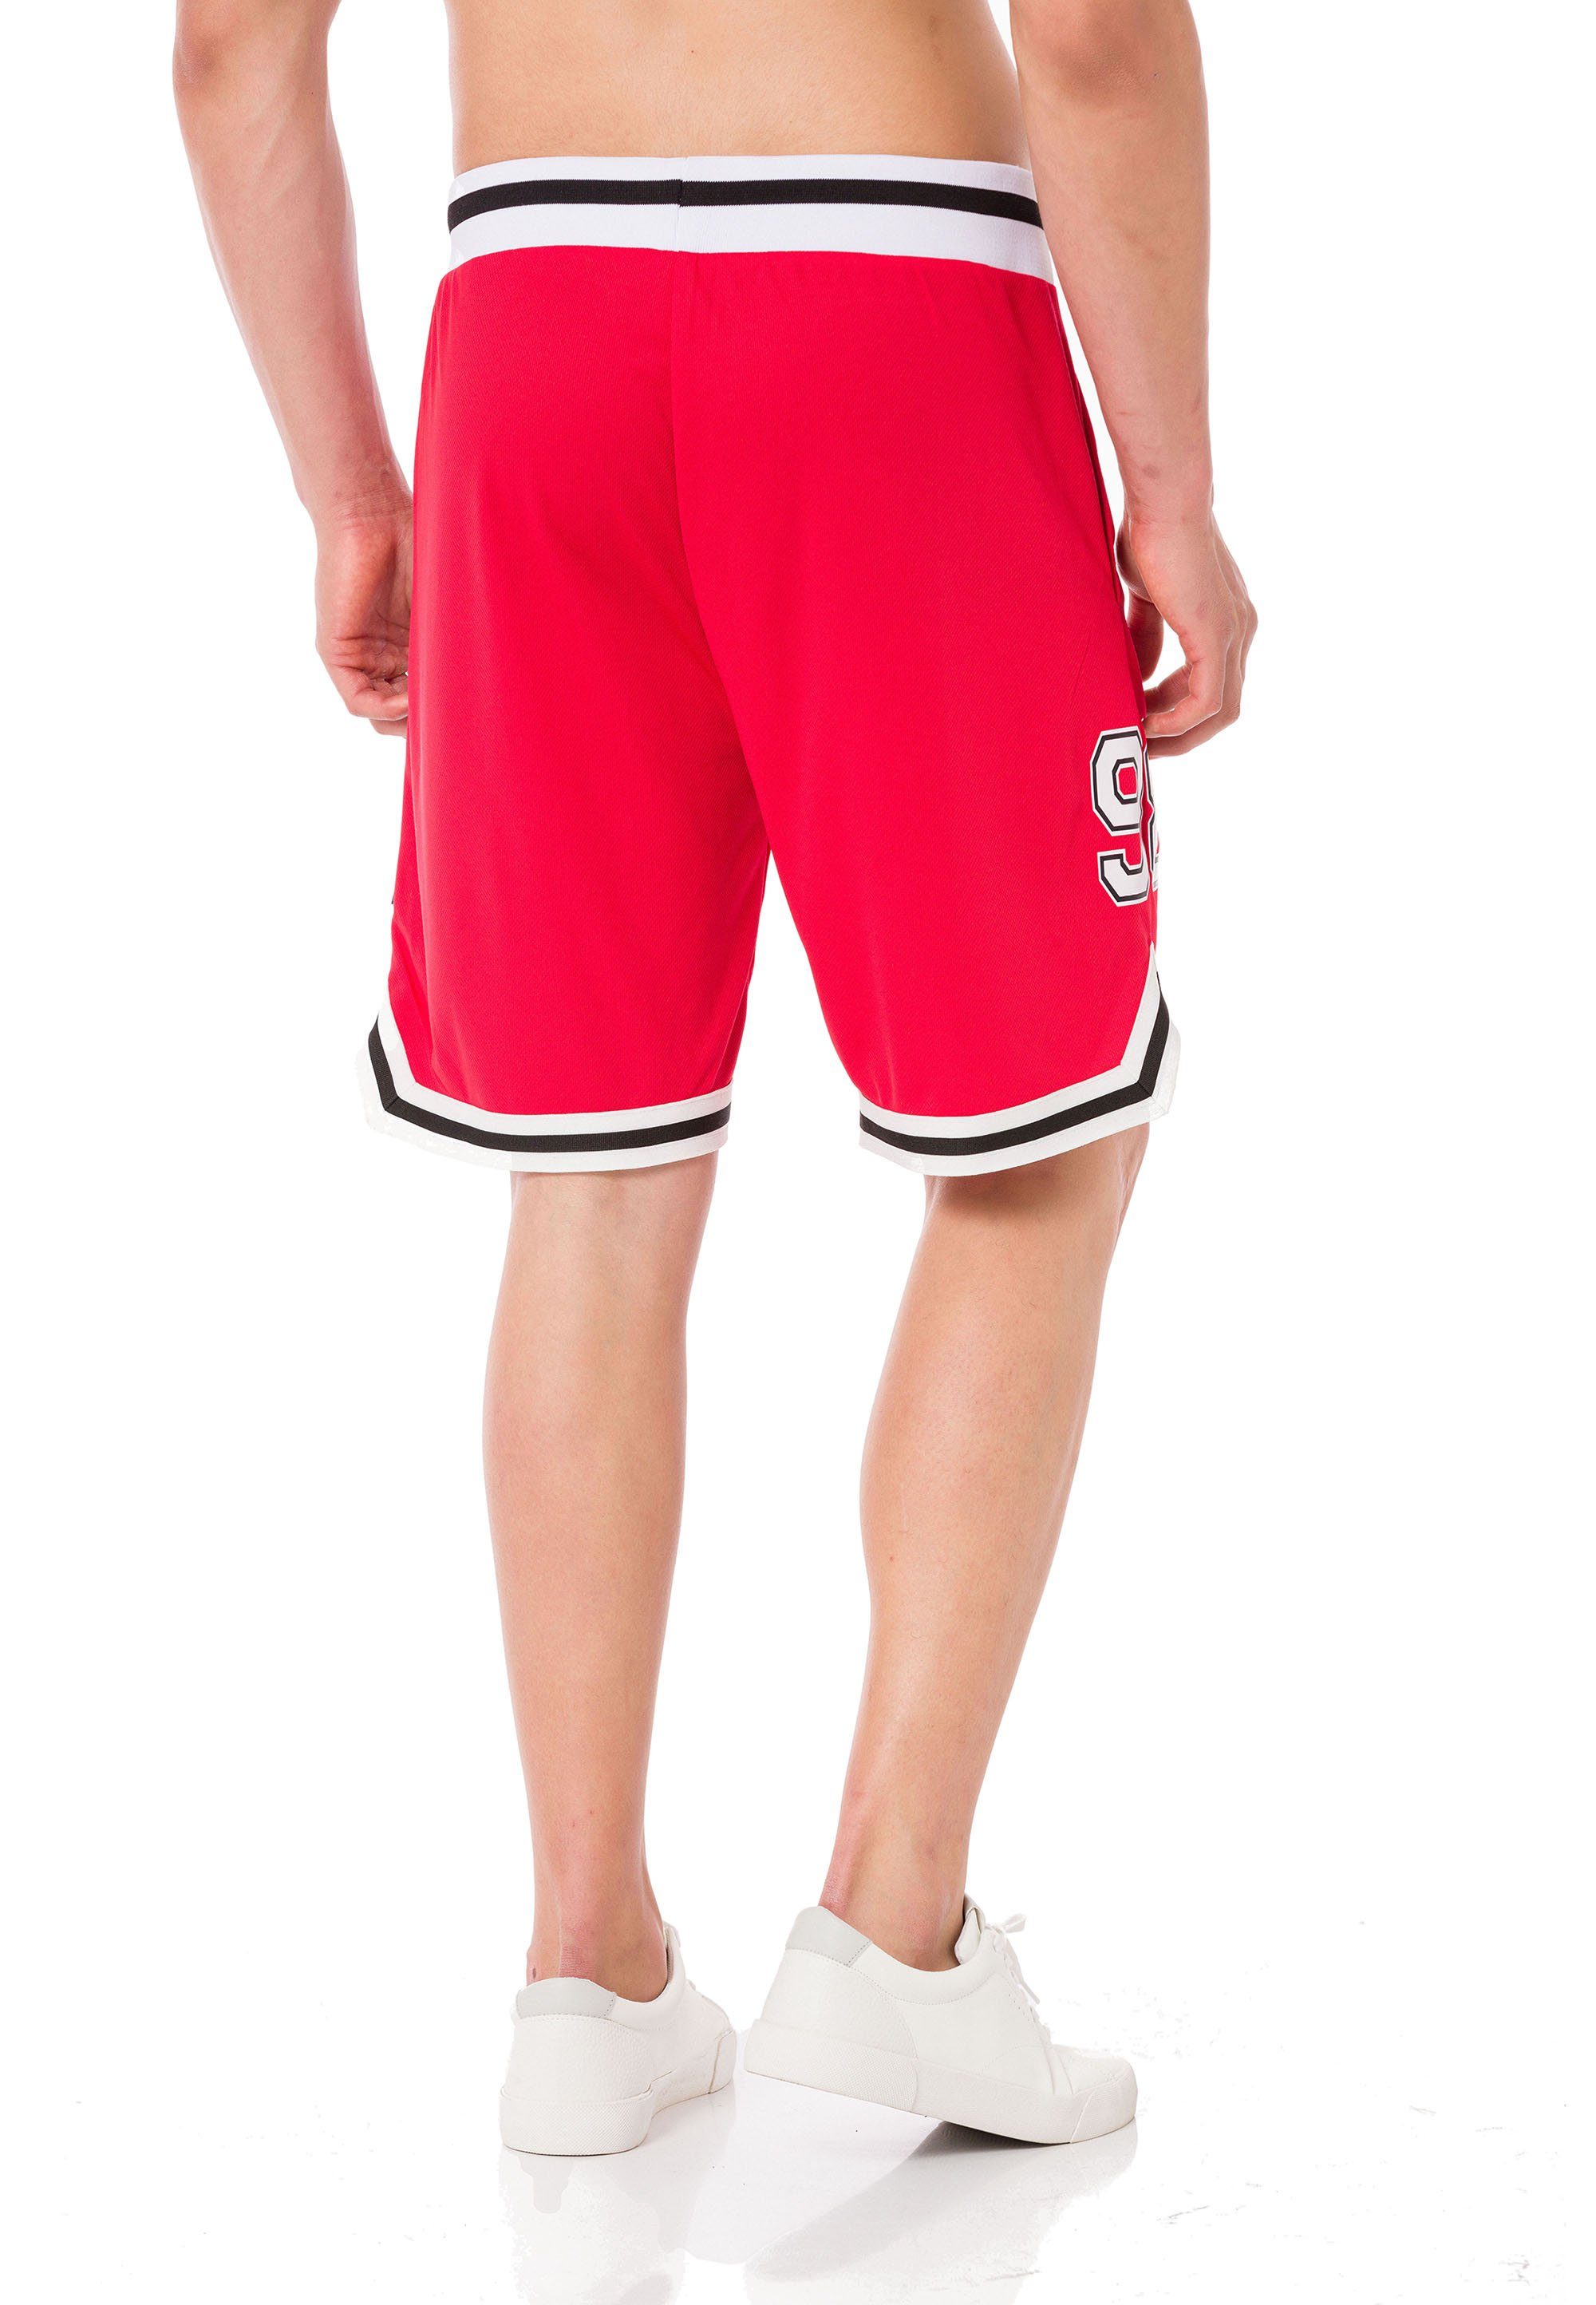 RedBridge mit Galeomaltande rot-weiß lässigen Shorts Kontraststreifen